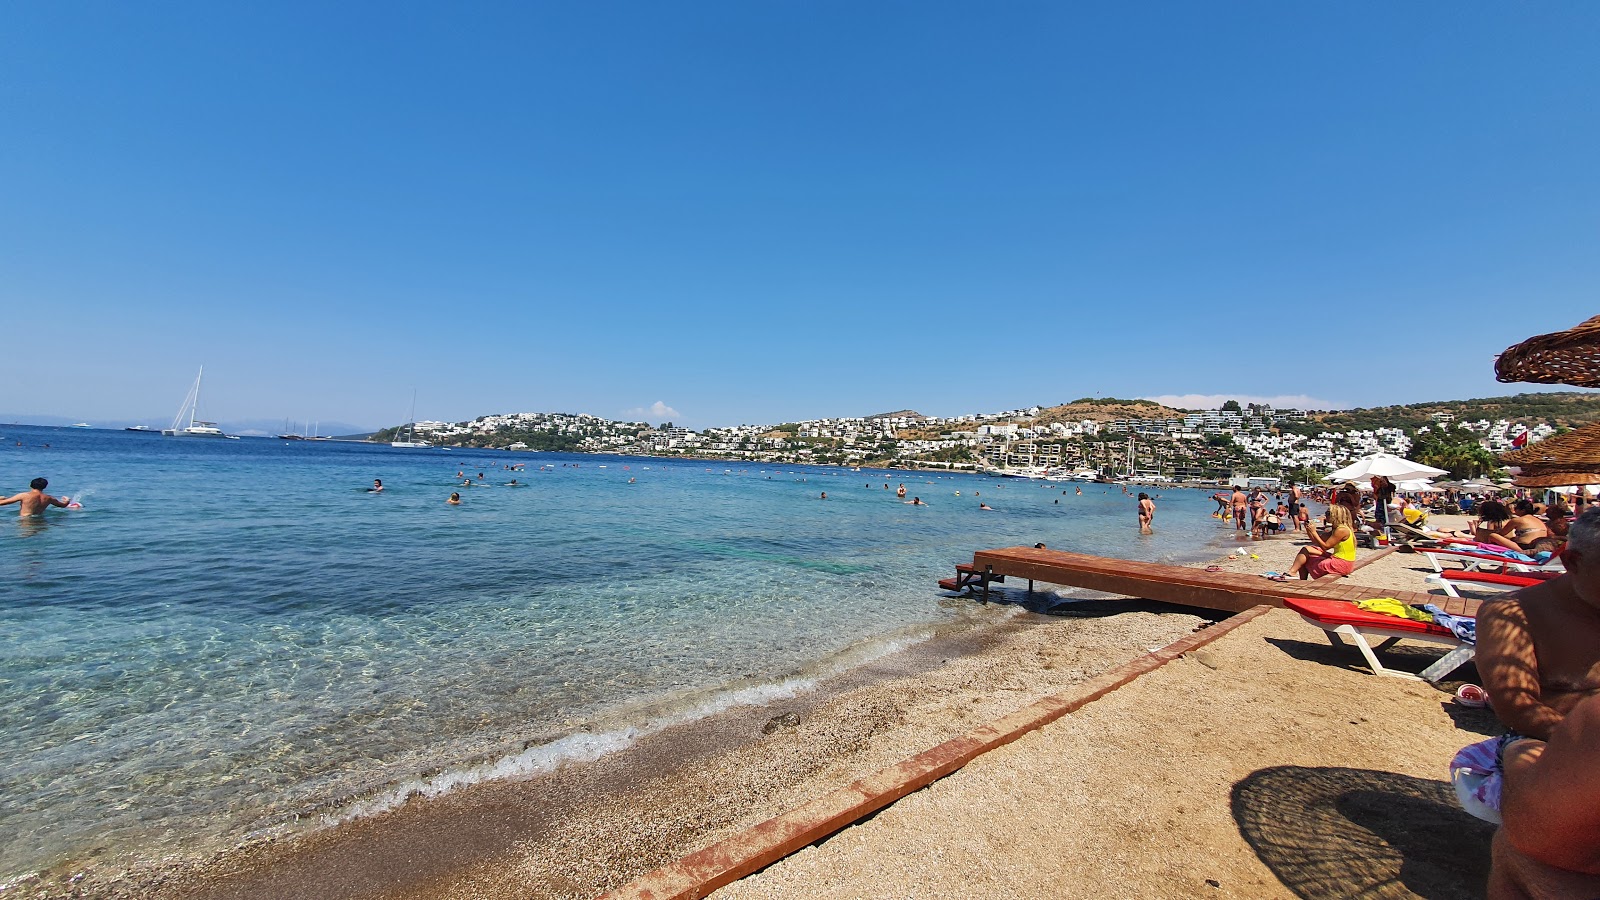 Gündoğan plajı'in fotoğrafı parlak kum yüzey ile